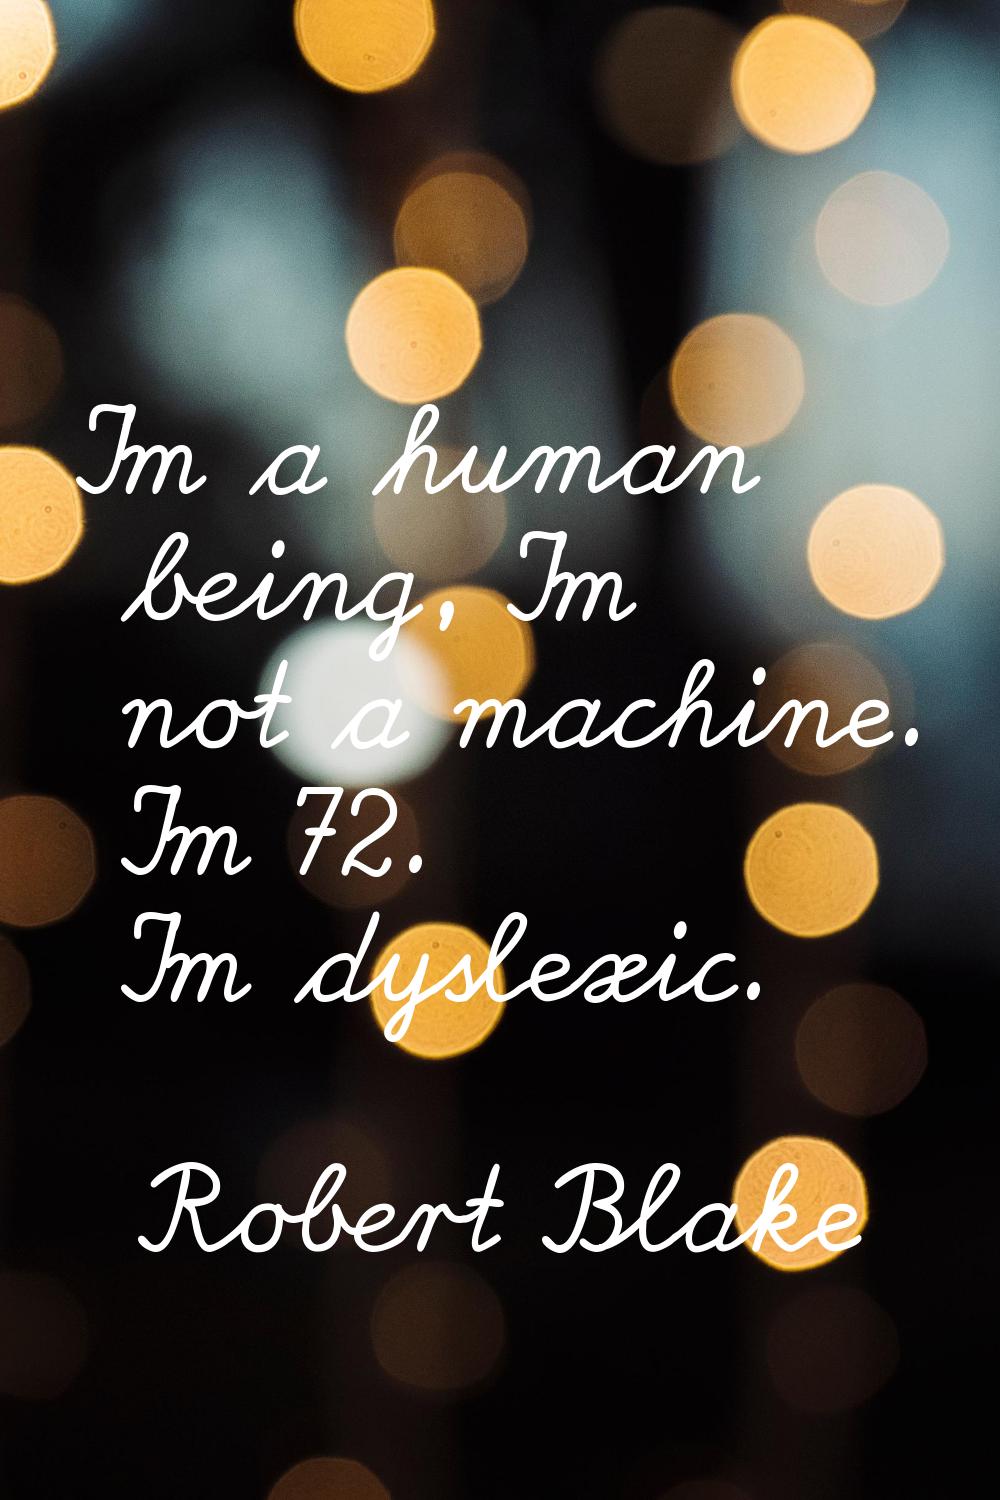 I'm a human being, I'm not a machine. I'm 72. I'm dyslexic.